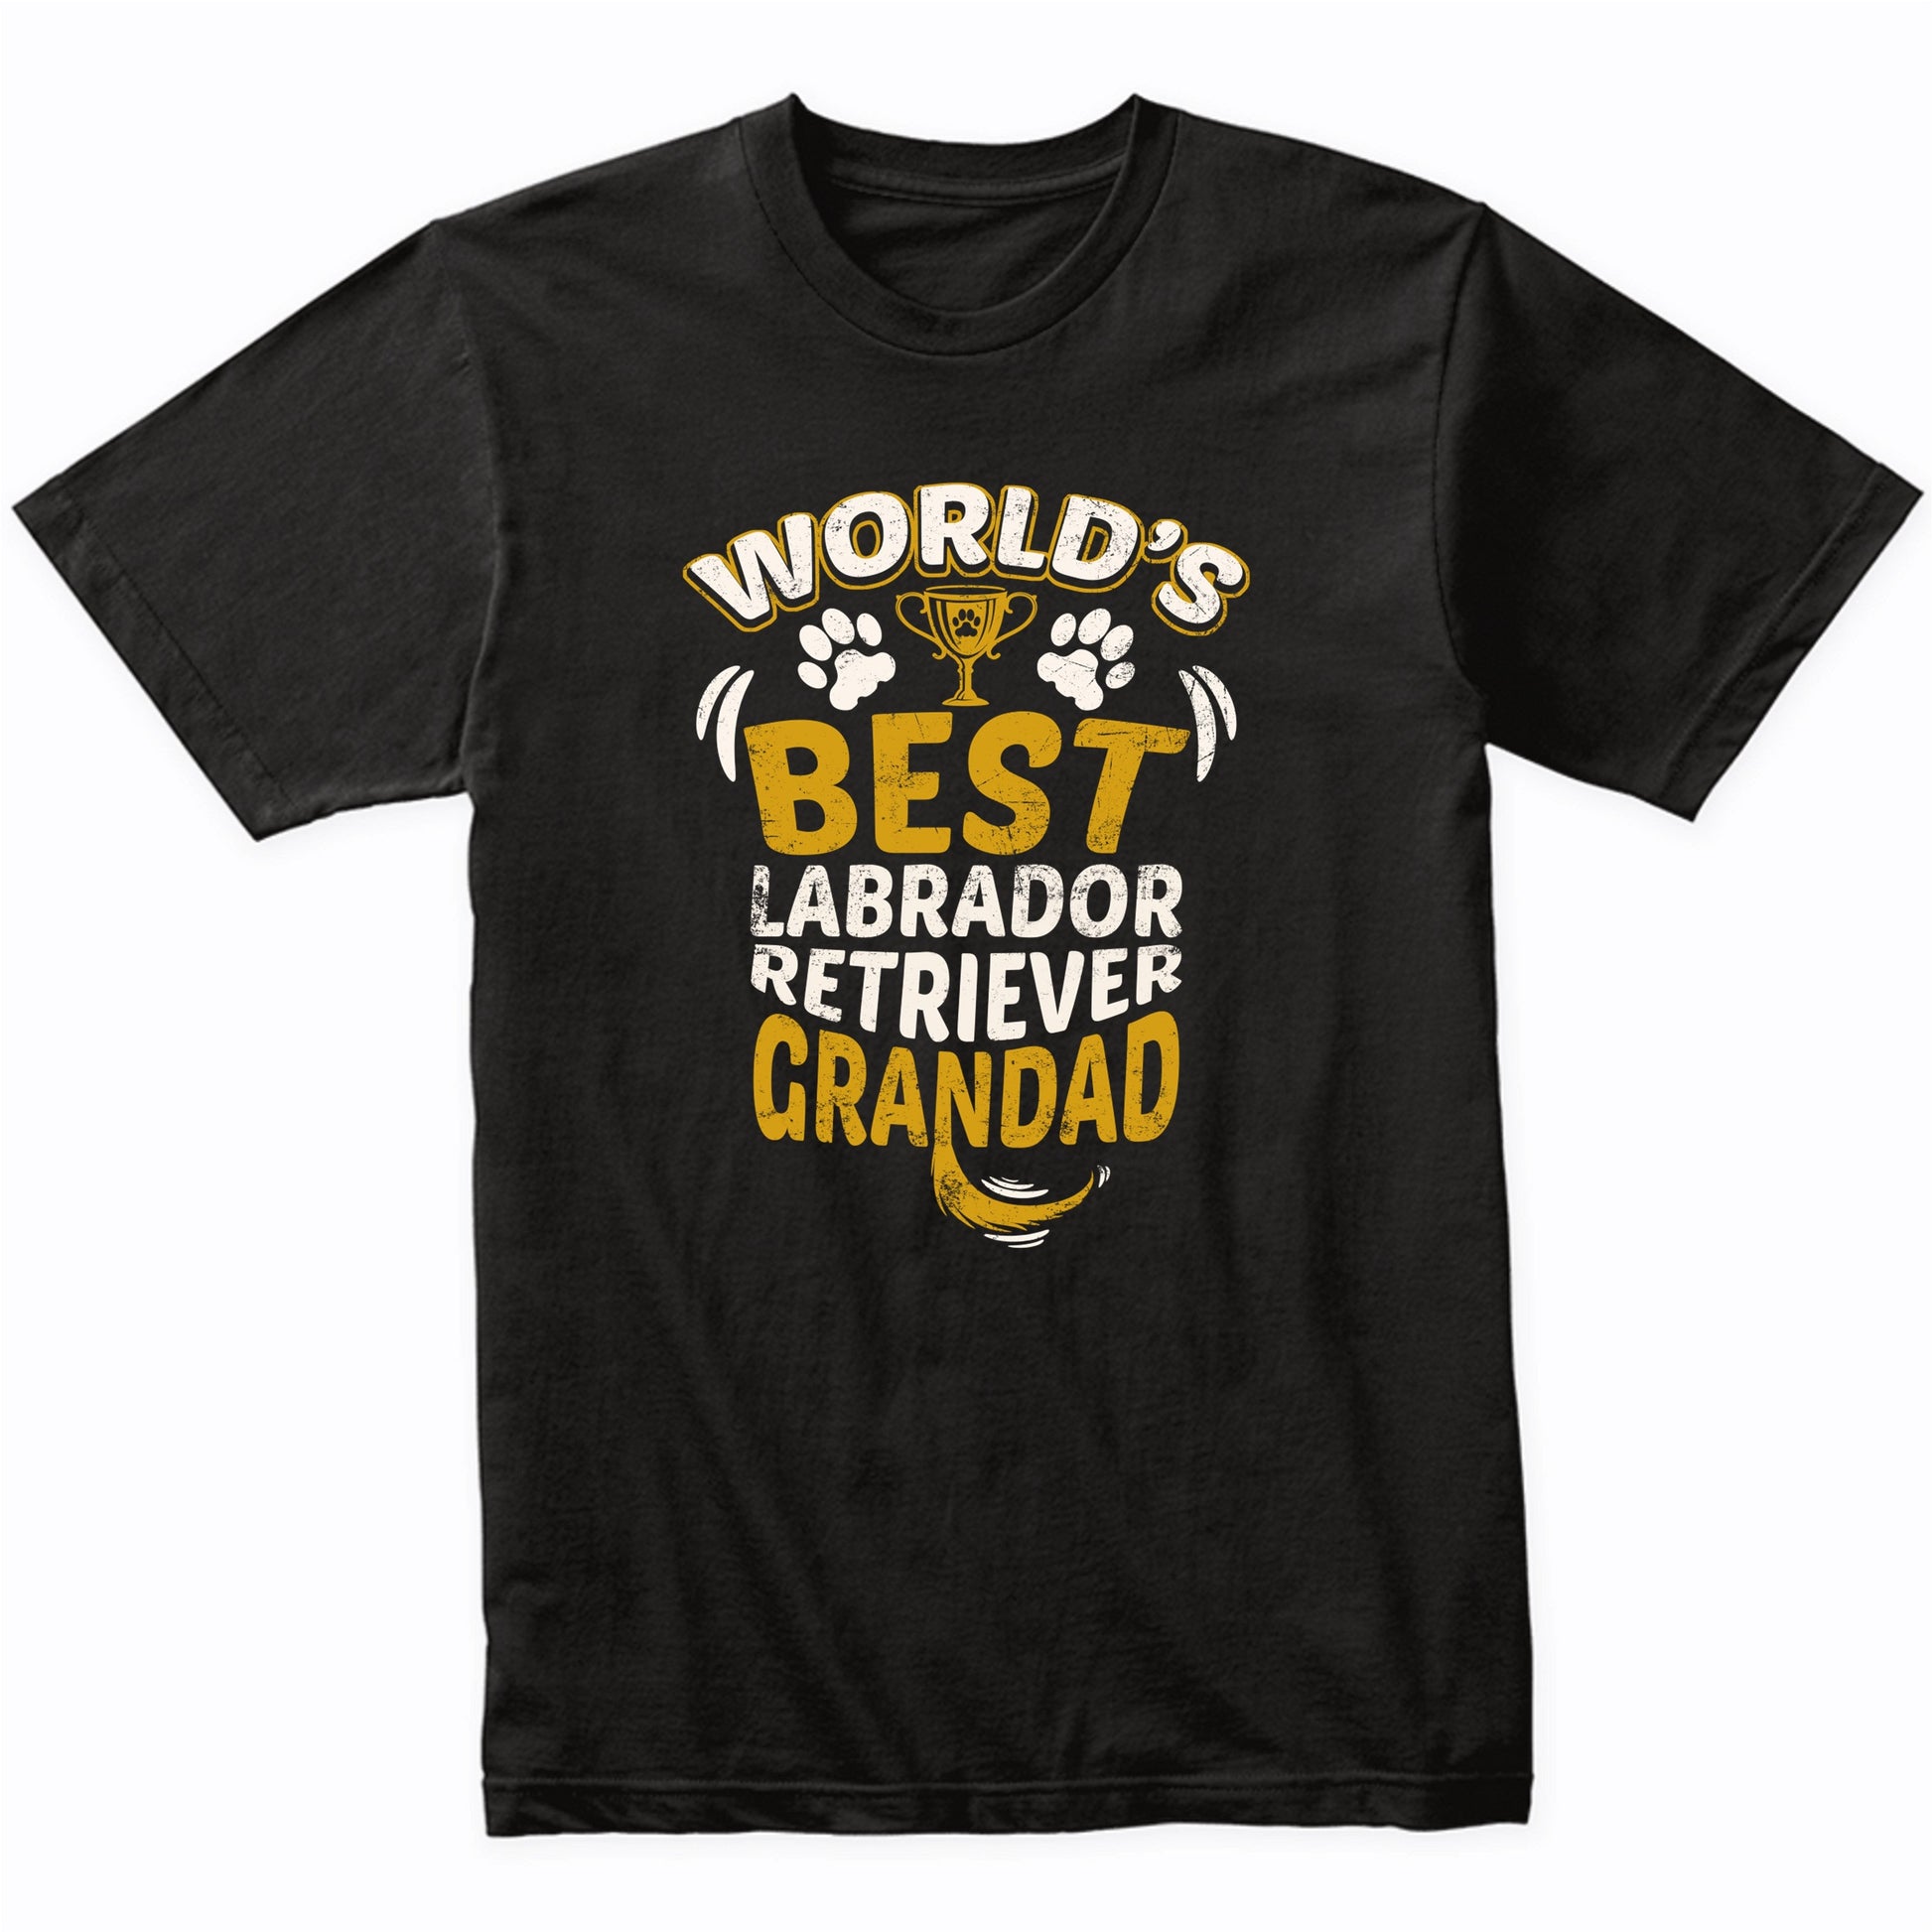 World's Best Labrador Retriever Grandad Graphic T-Shirt